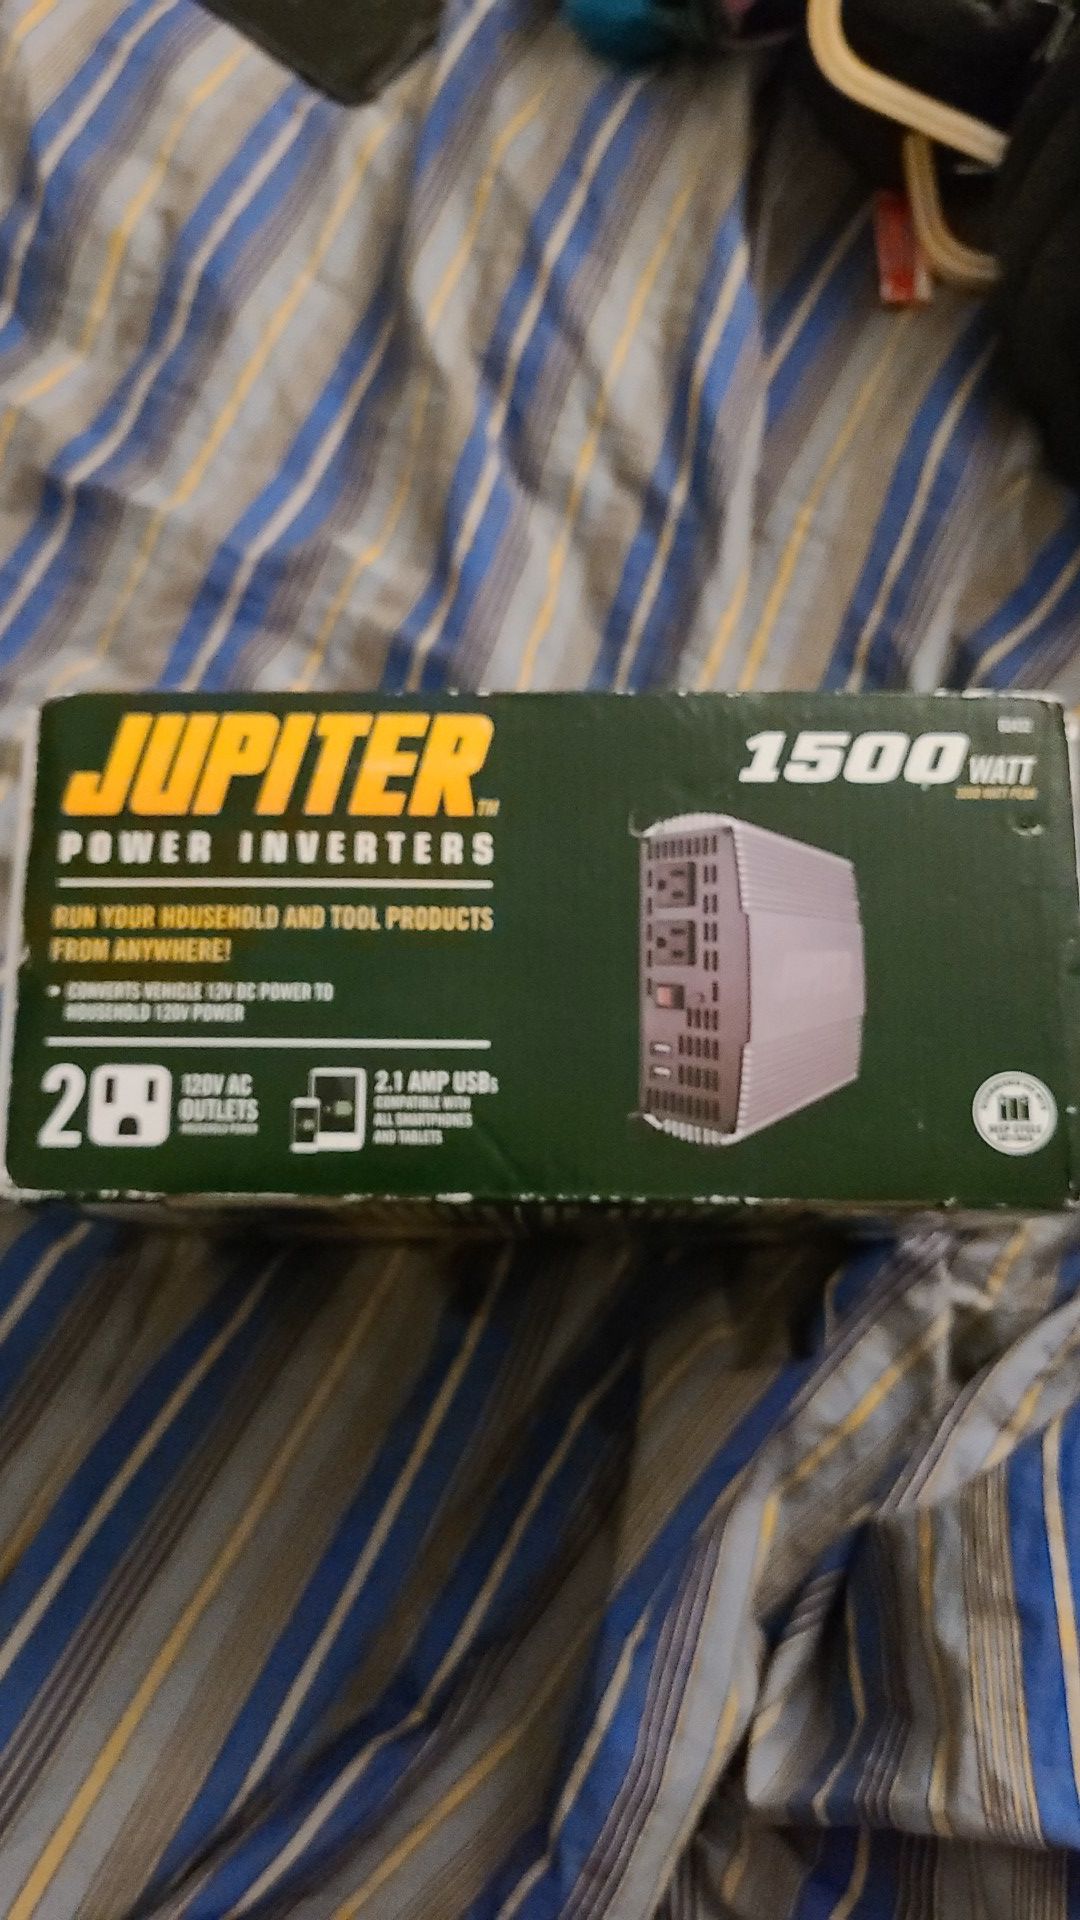 Jupiter power inverter 1500 watt 3000 watt peak and its brand spanking new in the box. Never been used.